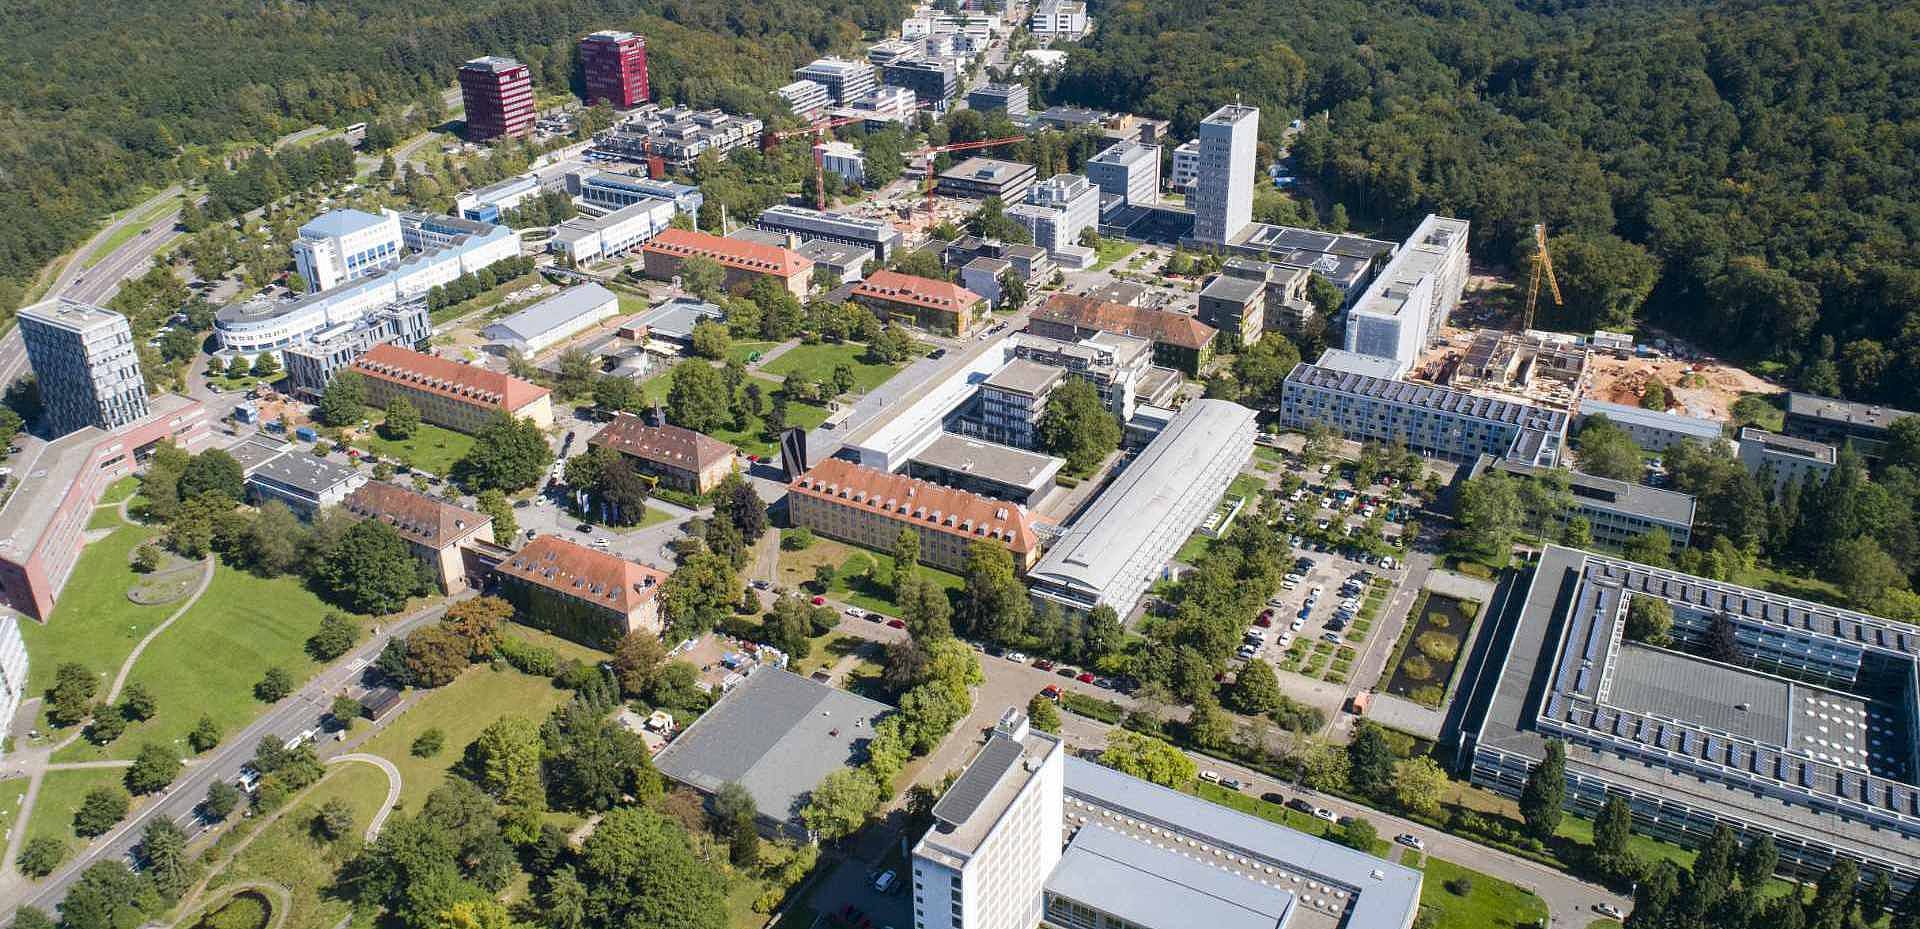 Der Campus Saarbrücken der Universität des Saarlandes von oben